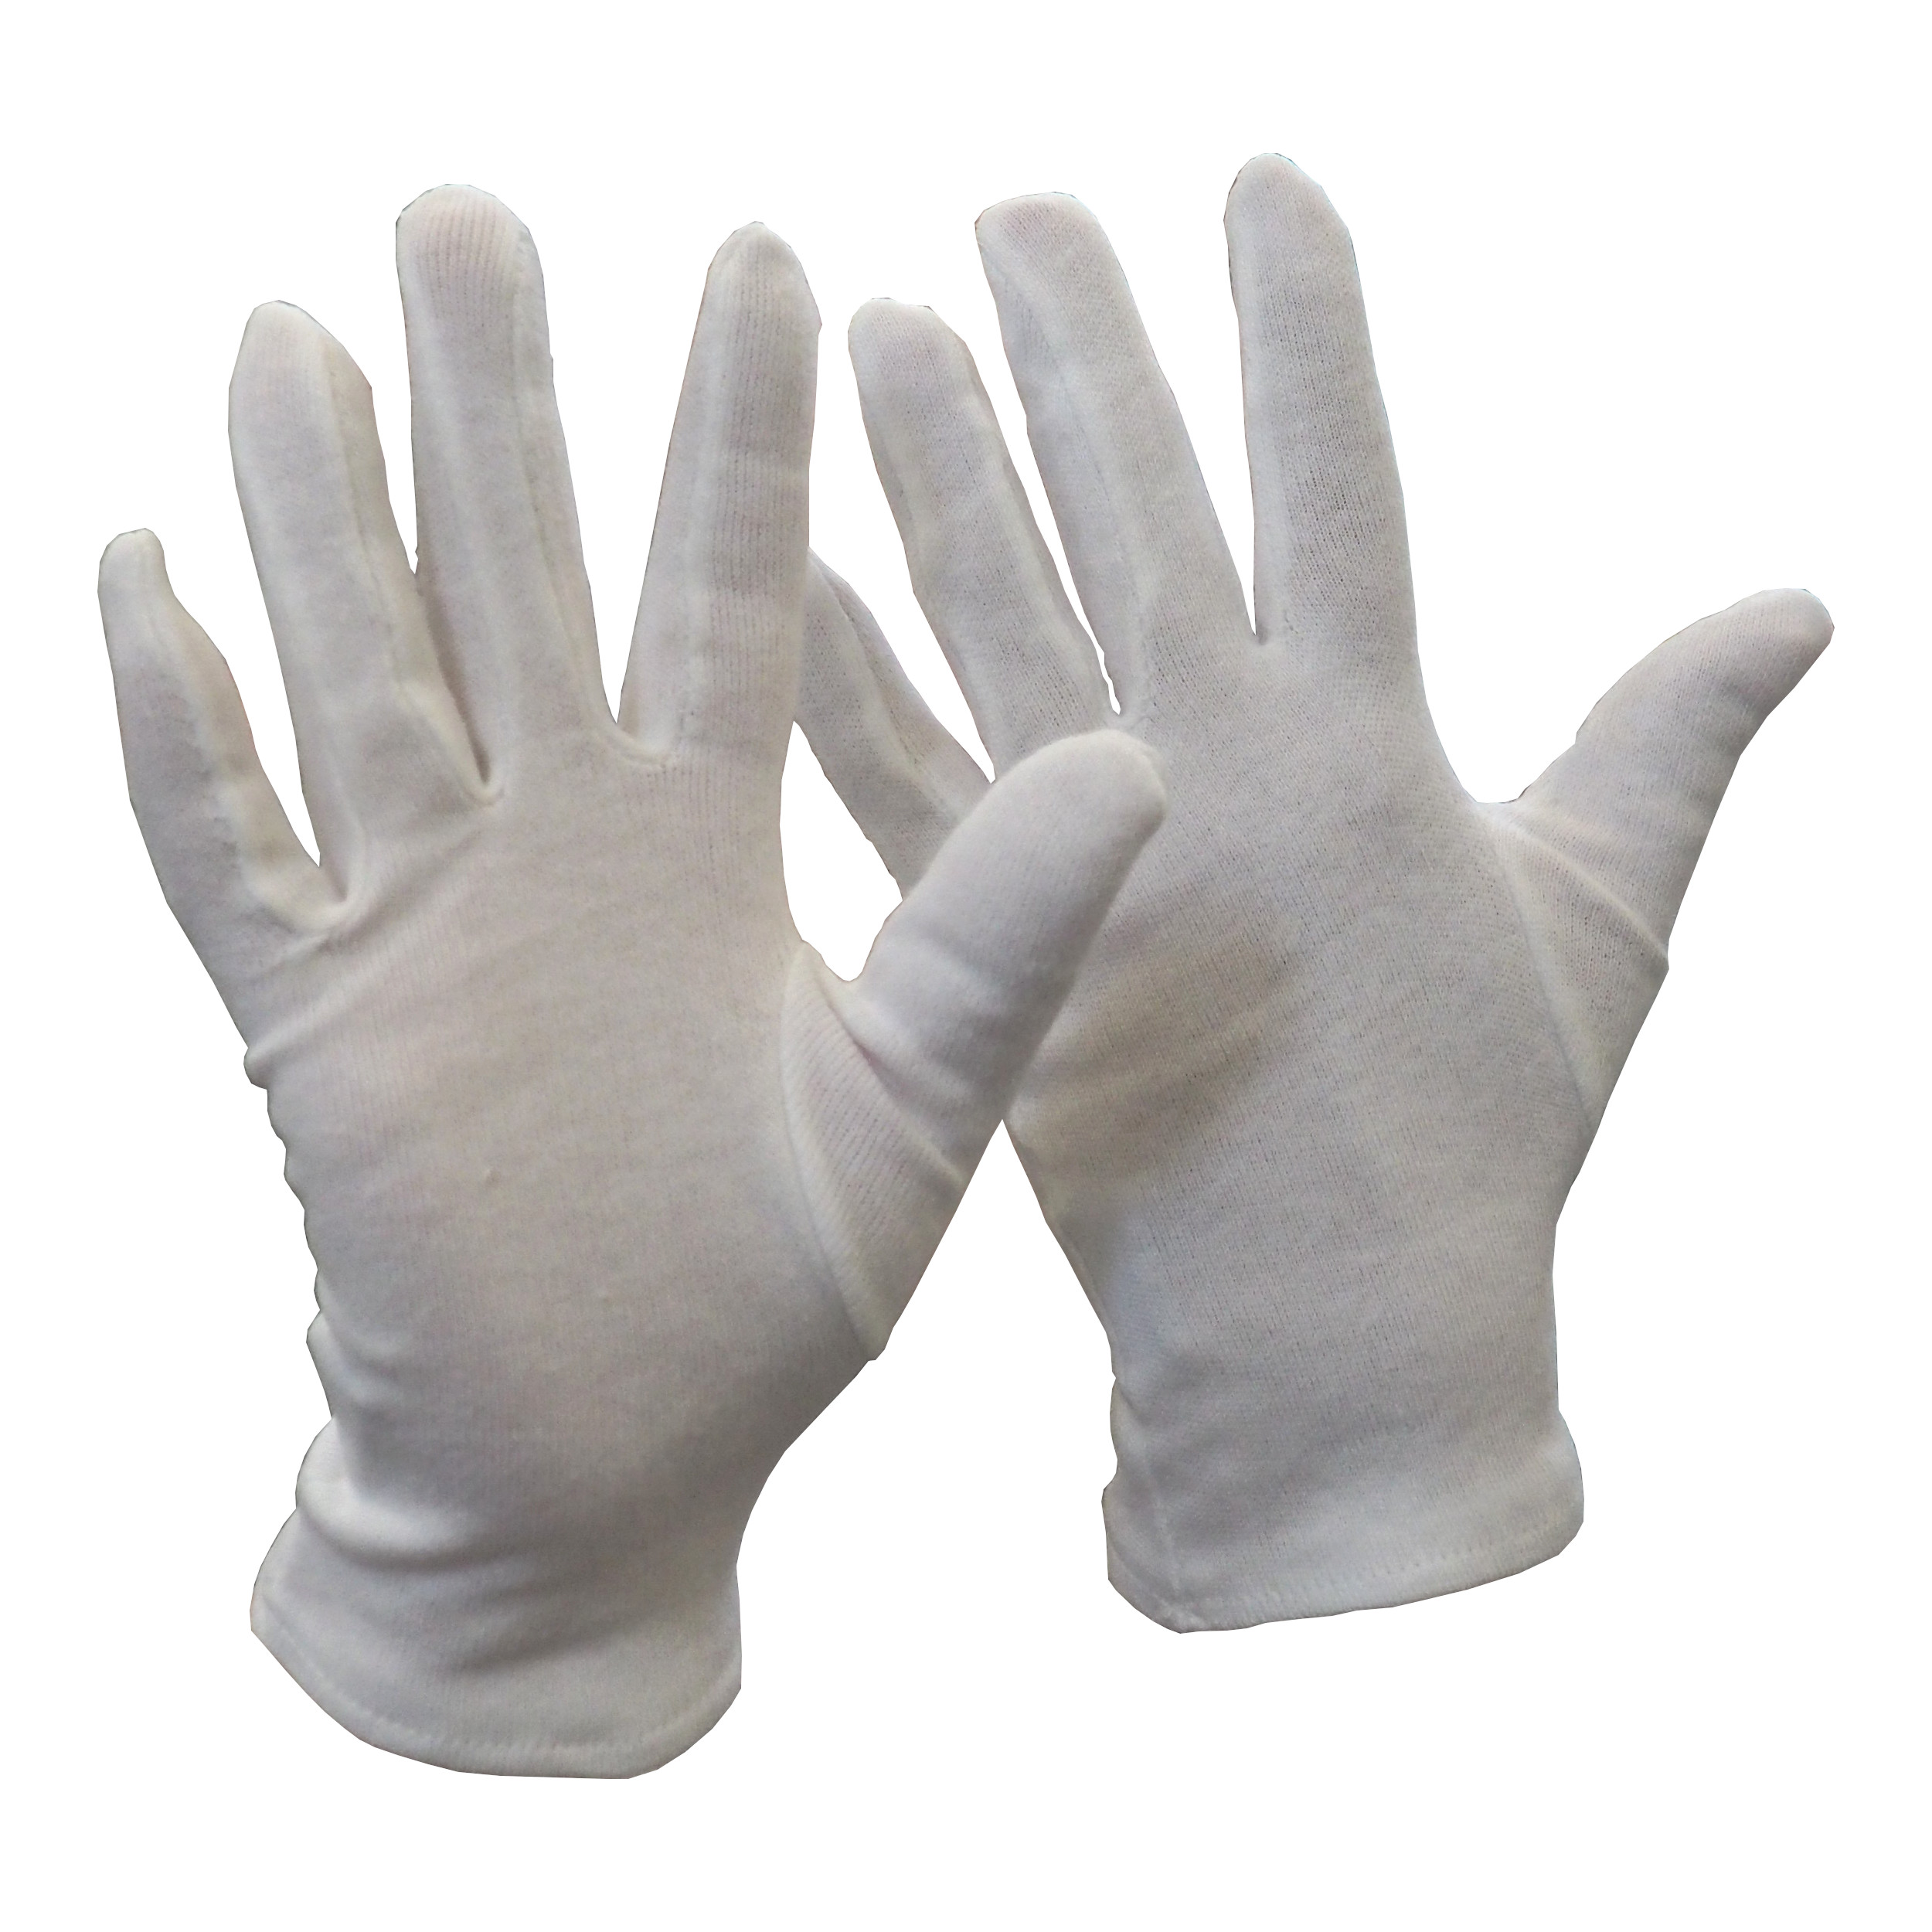 rukavice FAWA, textilní, bílé, velikost 6 0.02 Kg TOP Sklad4 606070 68